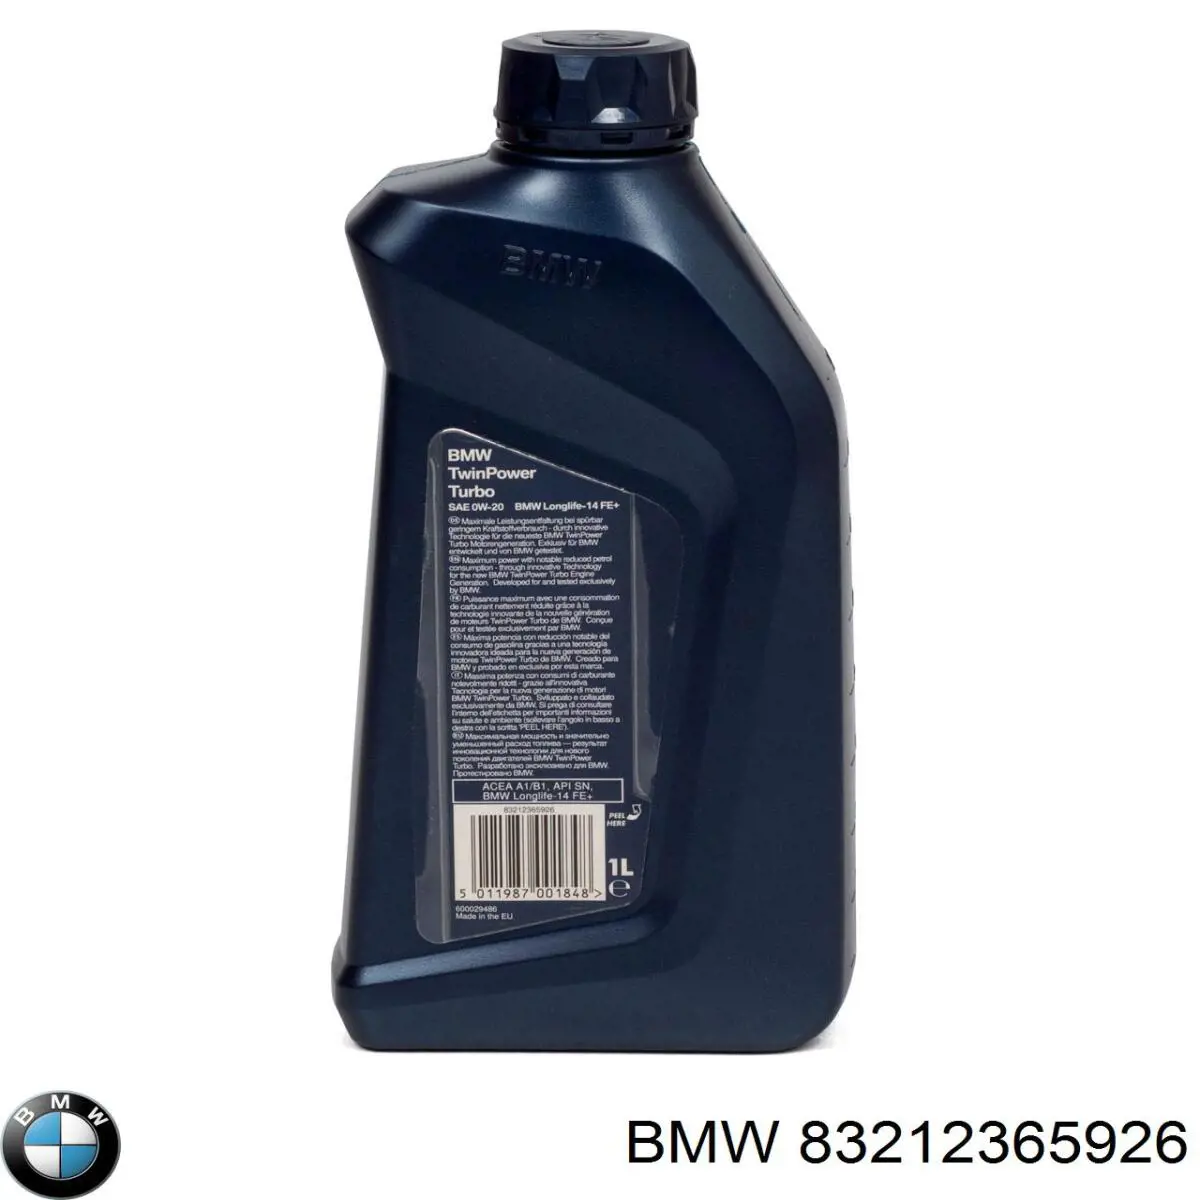 BMW Twin Power Turbo Sintético 1 L (83212365926)